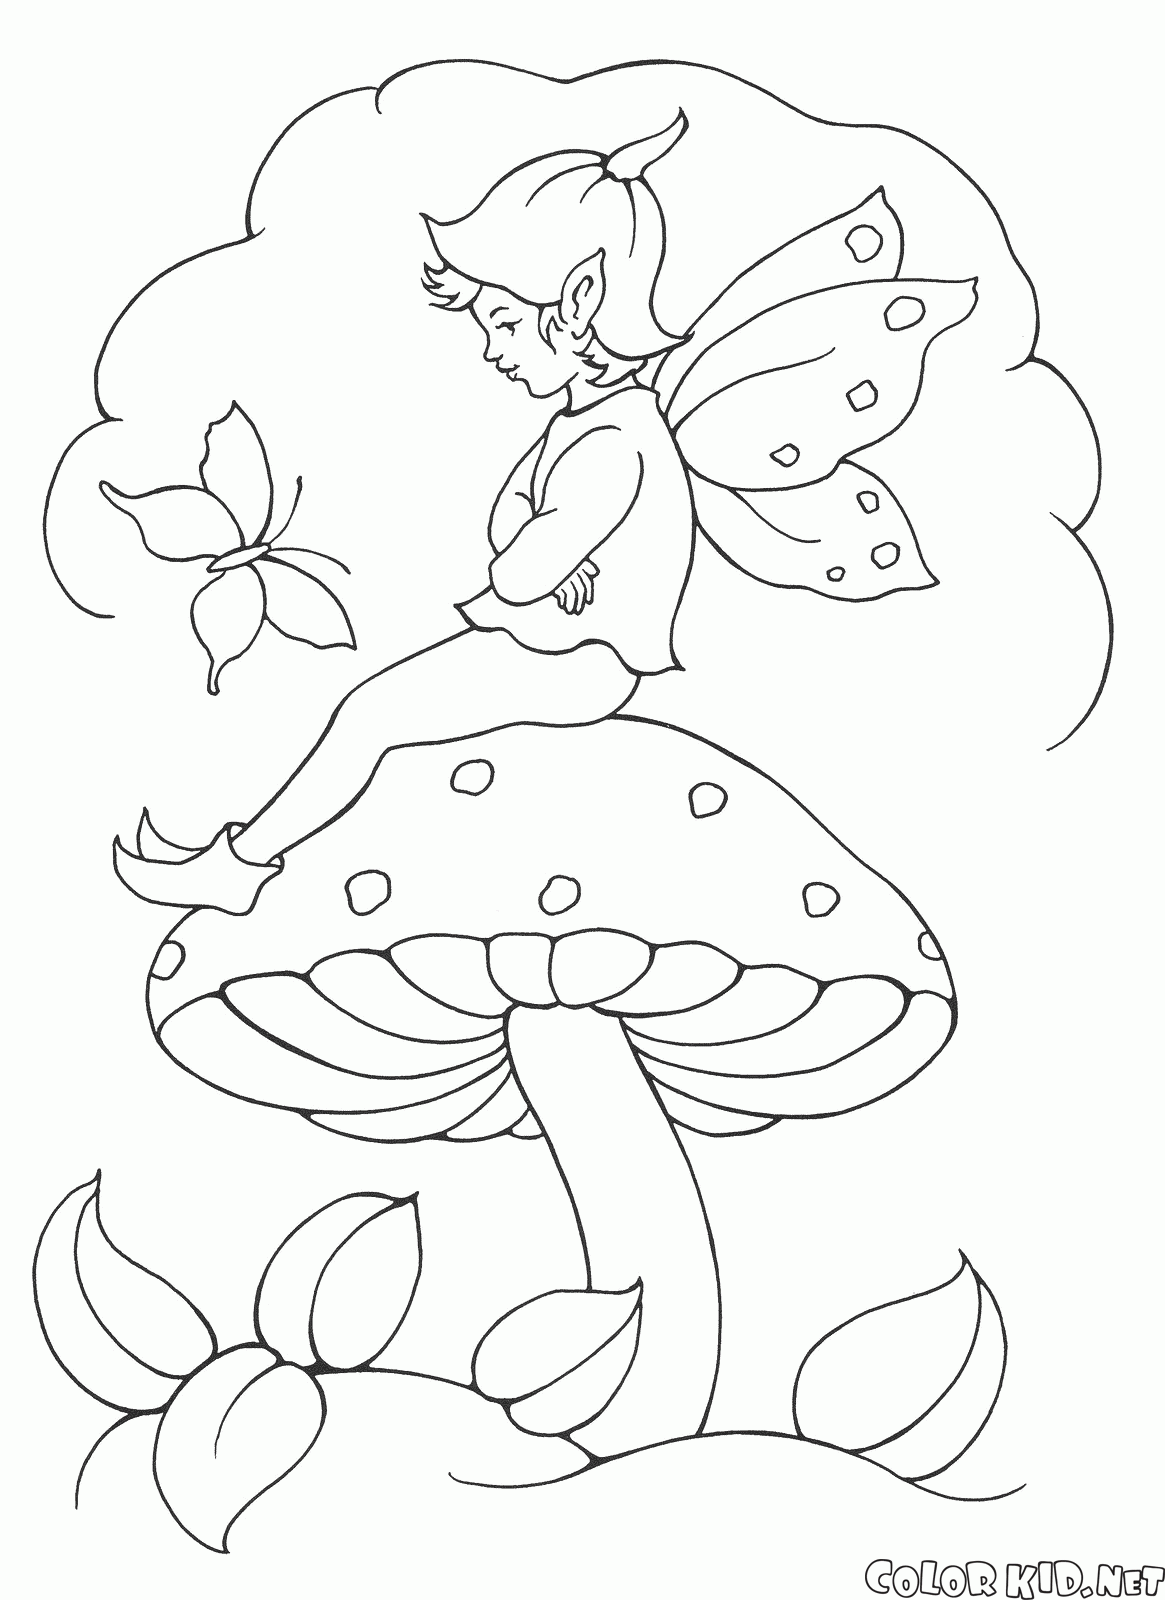 Elf on the mushroom